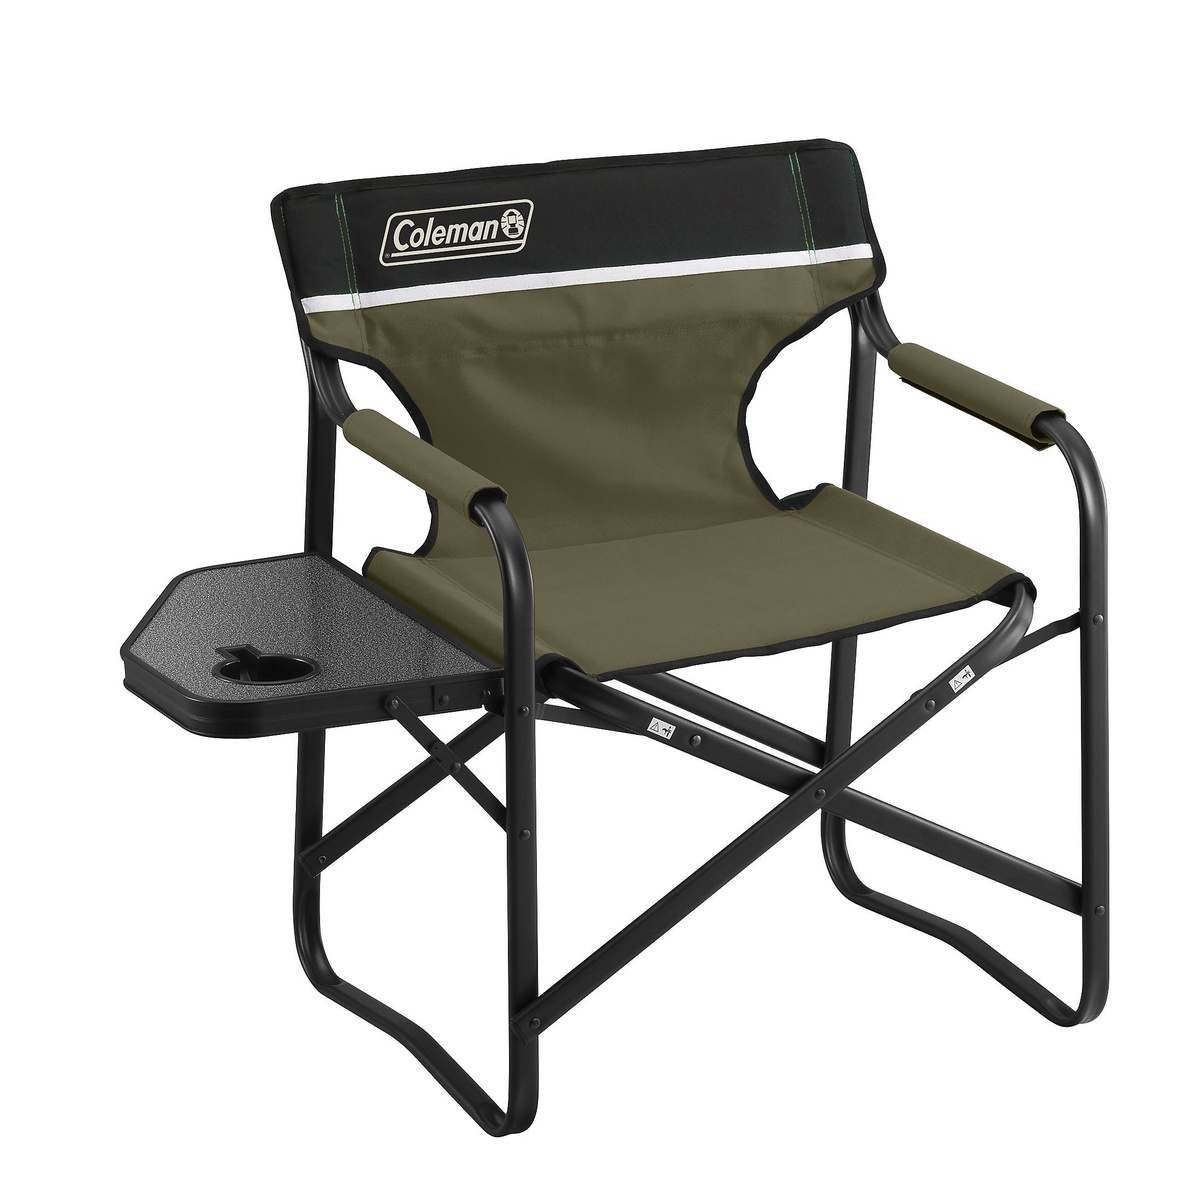 コールマン キャンプ用品 ファミリーチェア 椅子 COLEMAN サイドテーブル付デッキチェア オリーブ 新作製品 世界最高品質人気 2000033809 ギフト